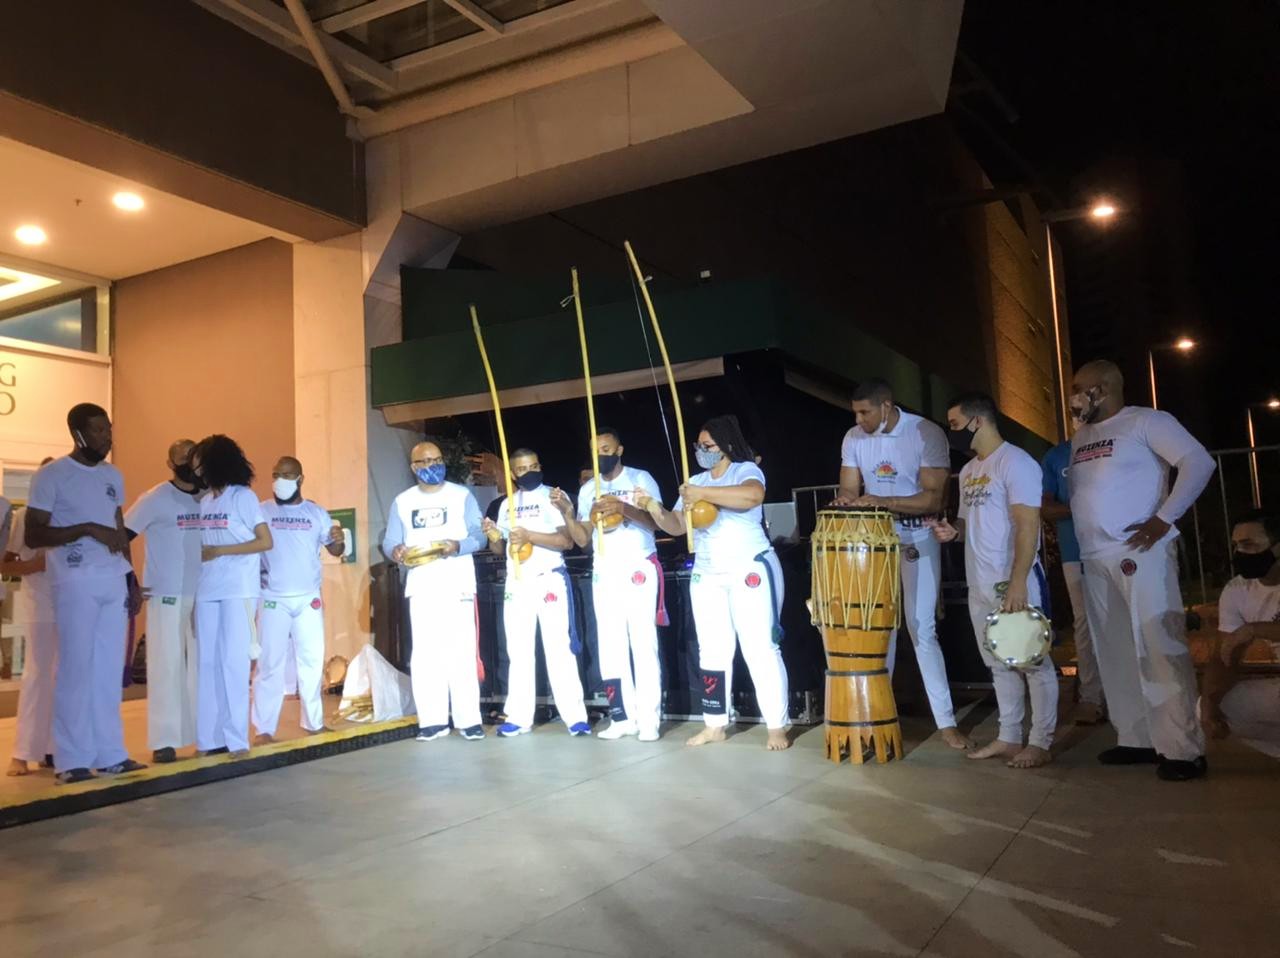 Ginga Cerrado promove evento de capoeira em Goiânia, com Grupo Munzenza